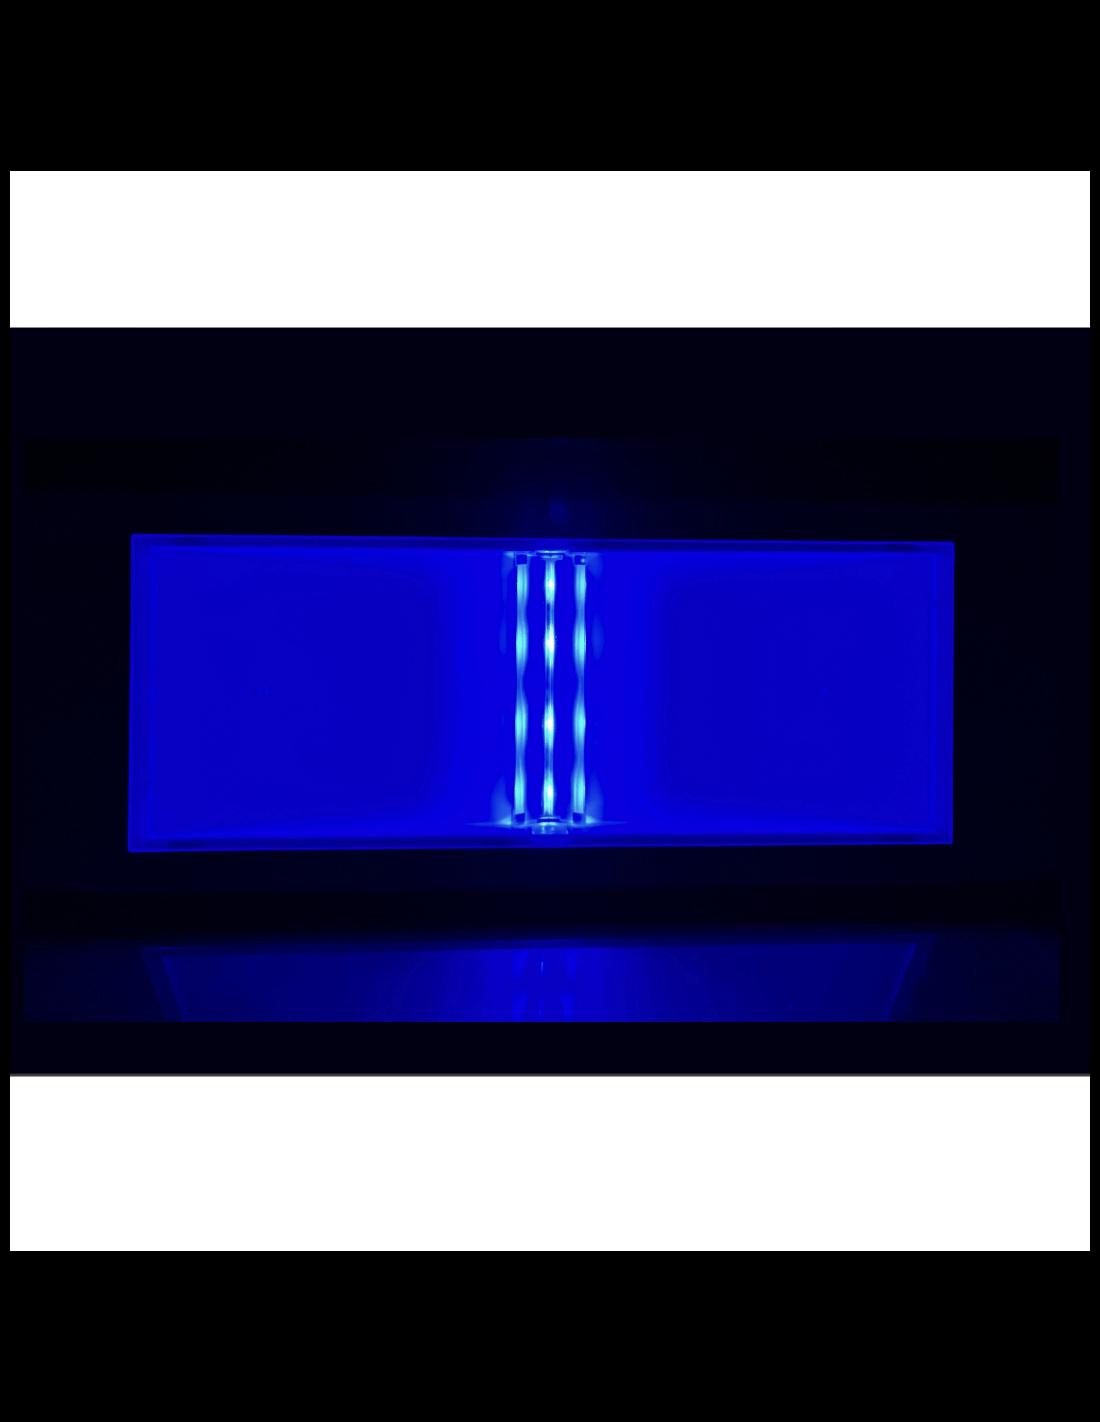 Lampada d'emergenza LED BEGHELLI 1499BLU, luce blu, funzione notturna, 8 h autonomia.